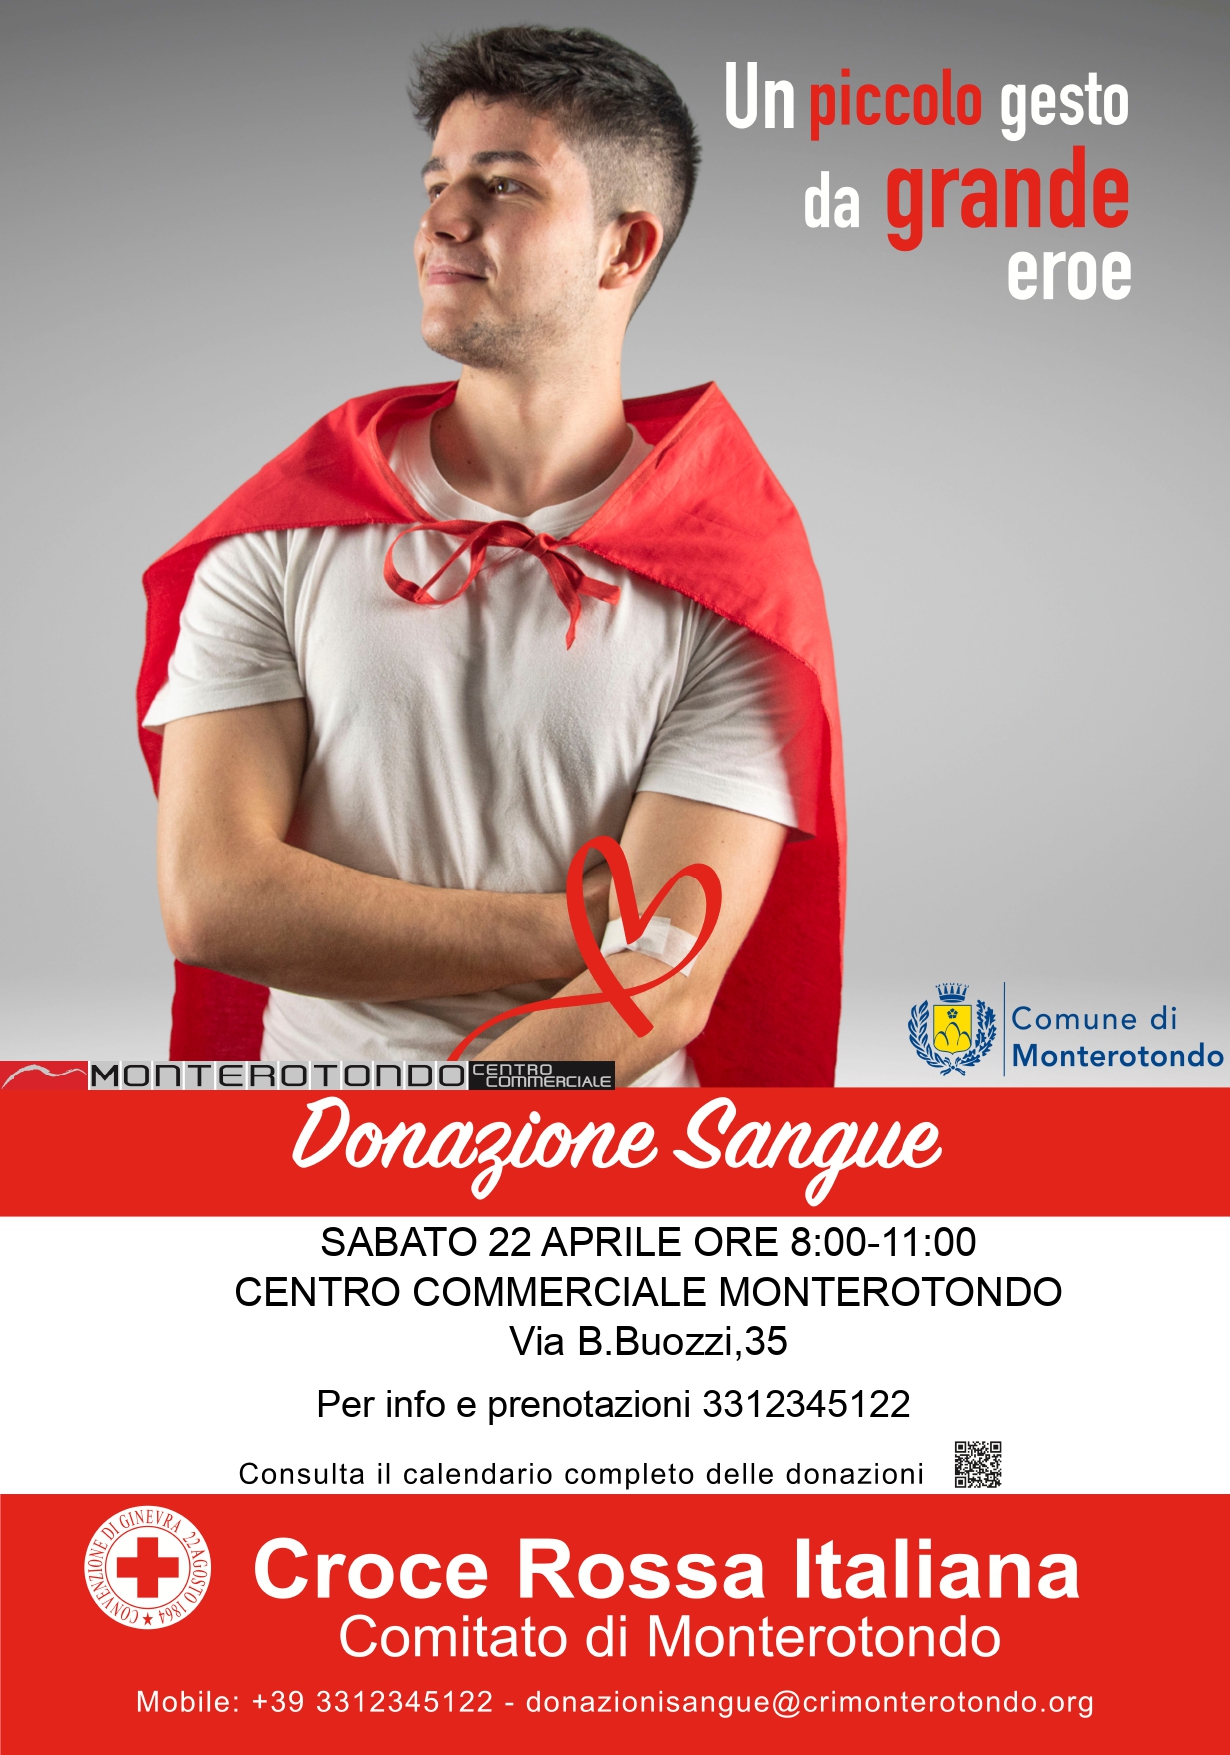 Donazione sangue Croce Rossa Italiana: sabato 22 aprile